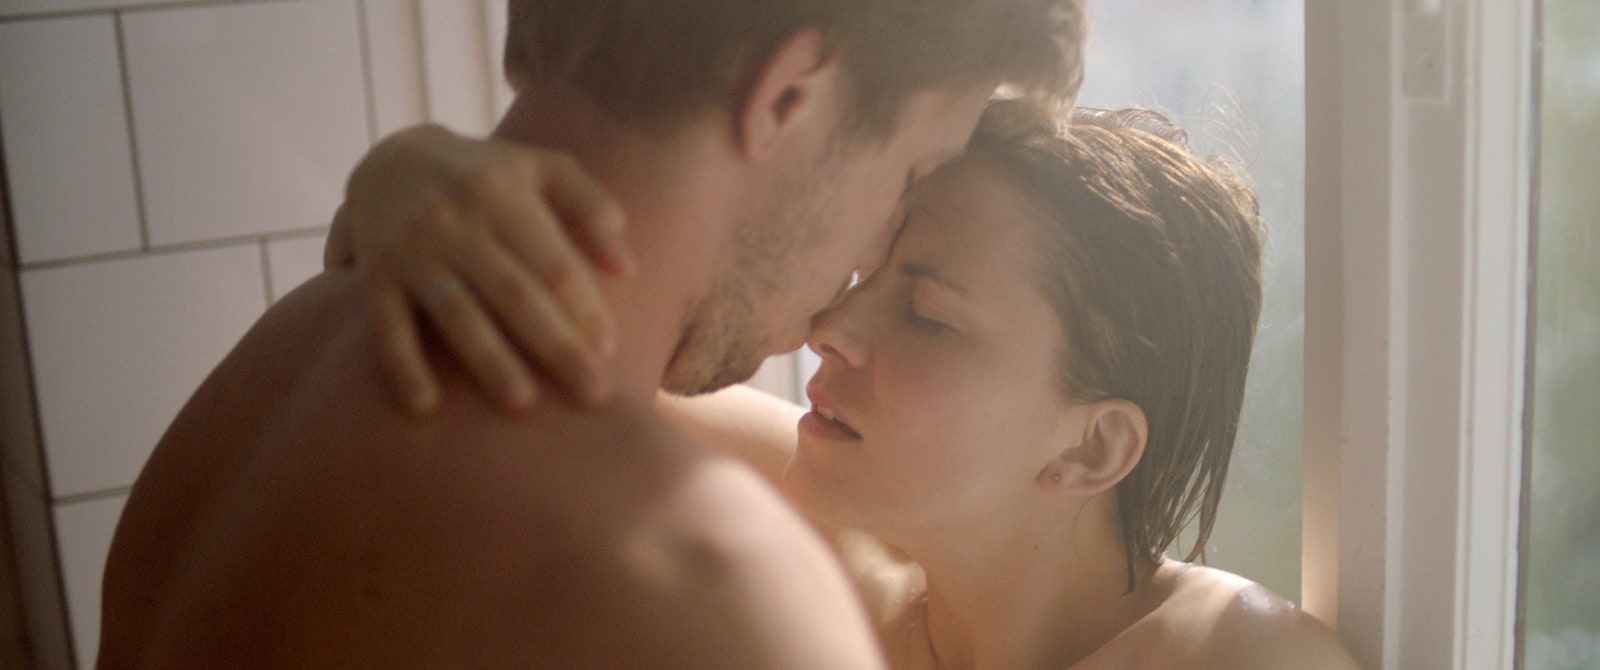 Ближе к делу: 10 российских фильмов про секс